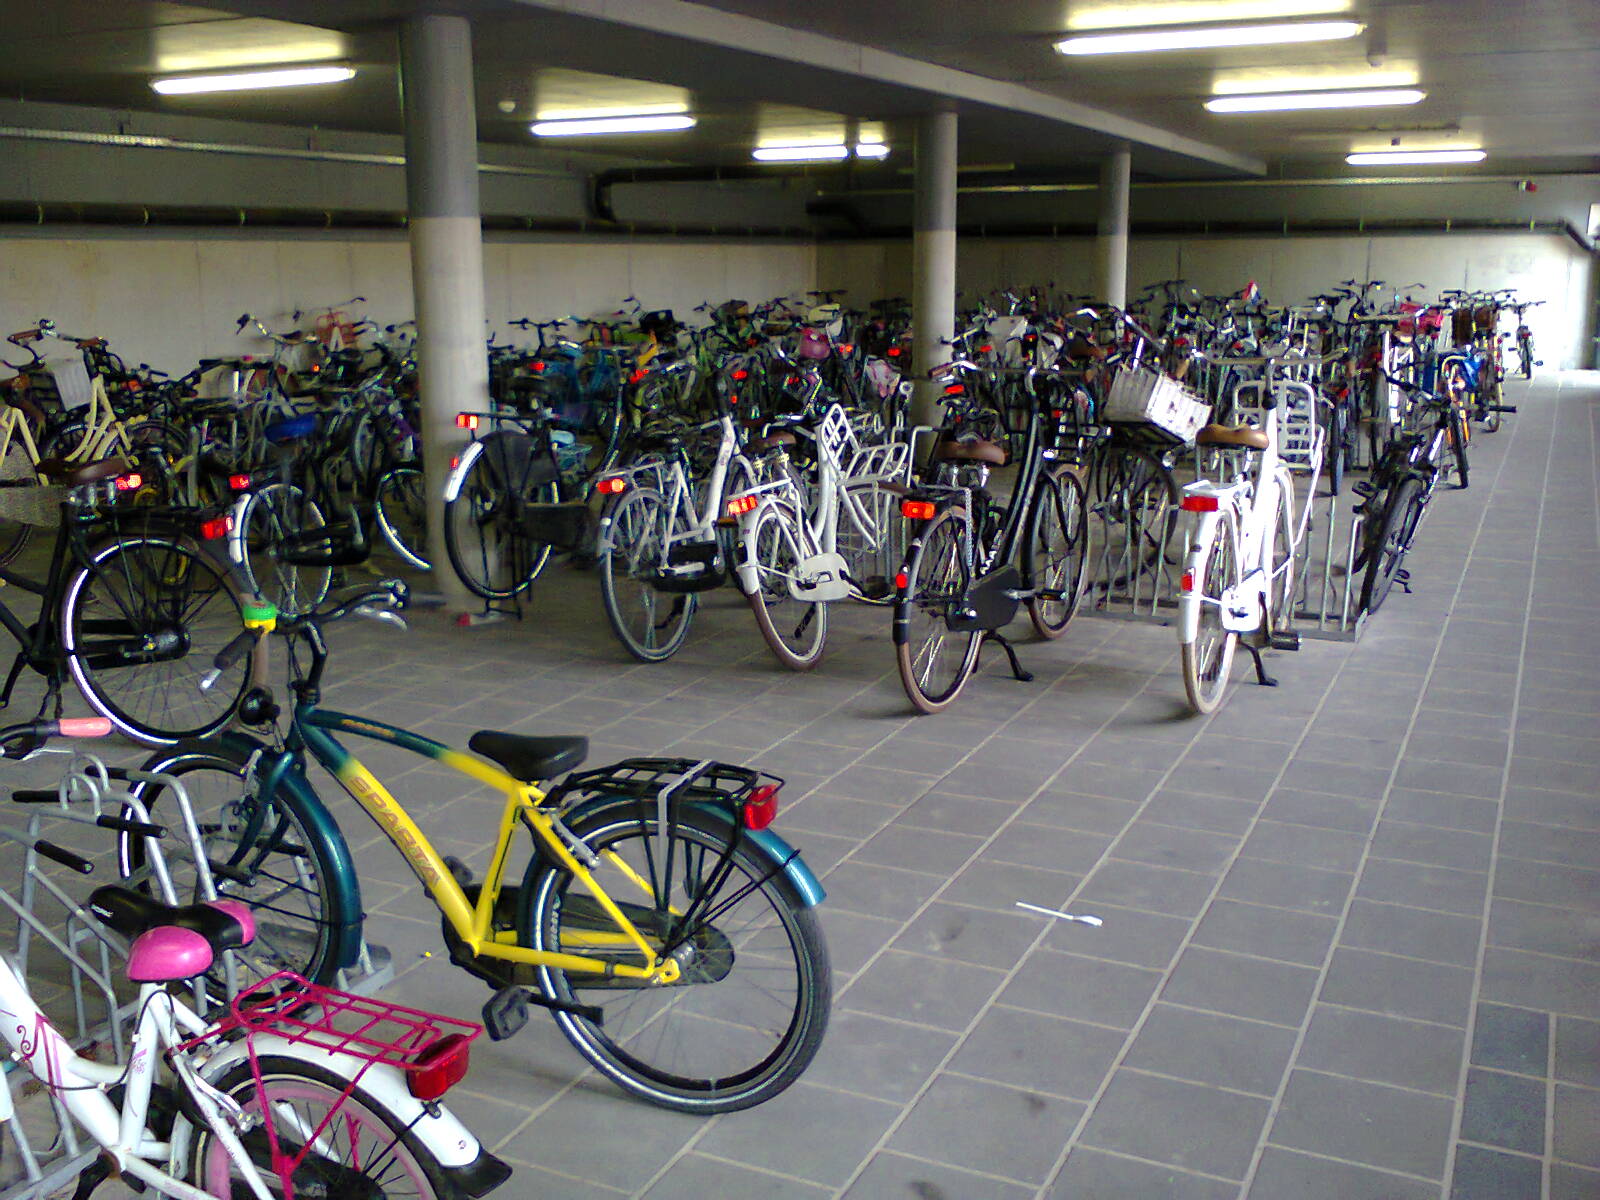 School cycle parking in Assen